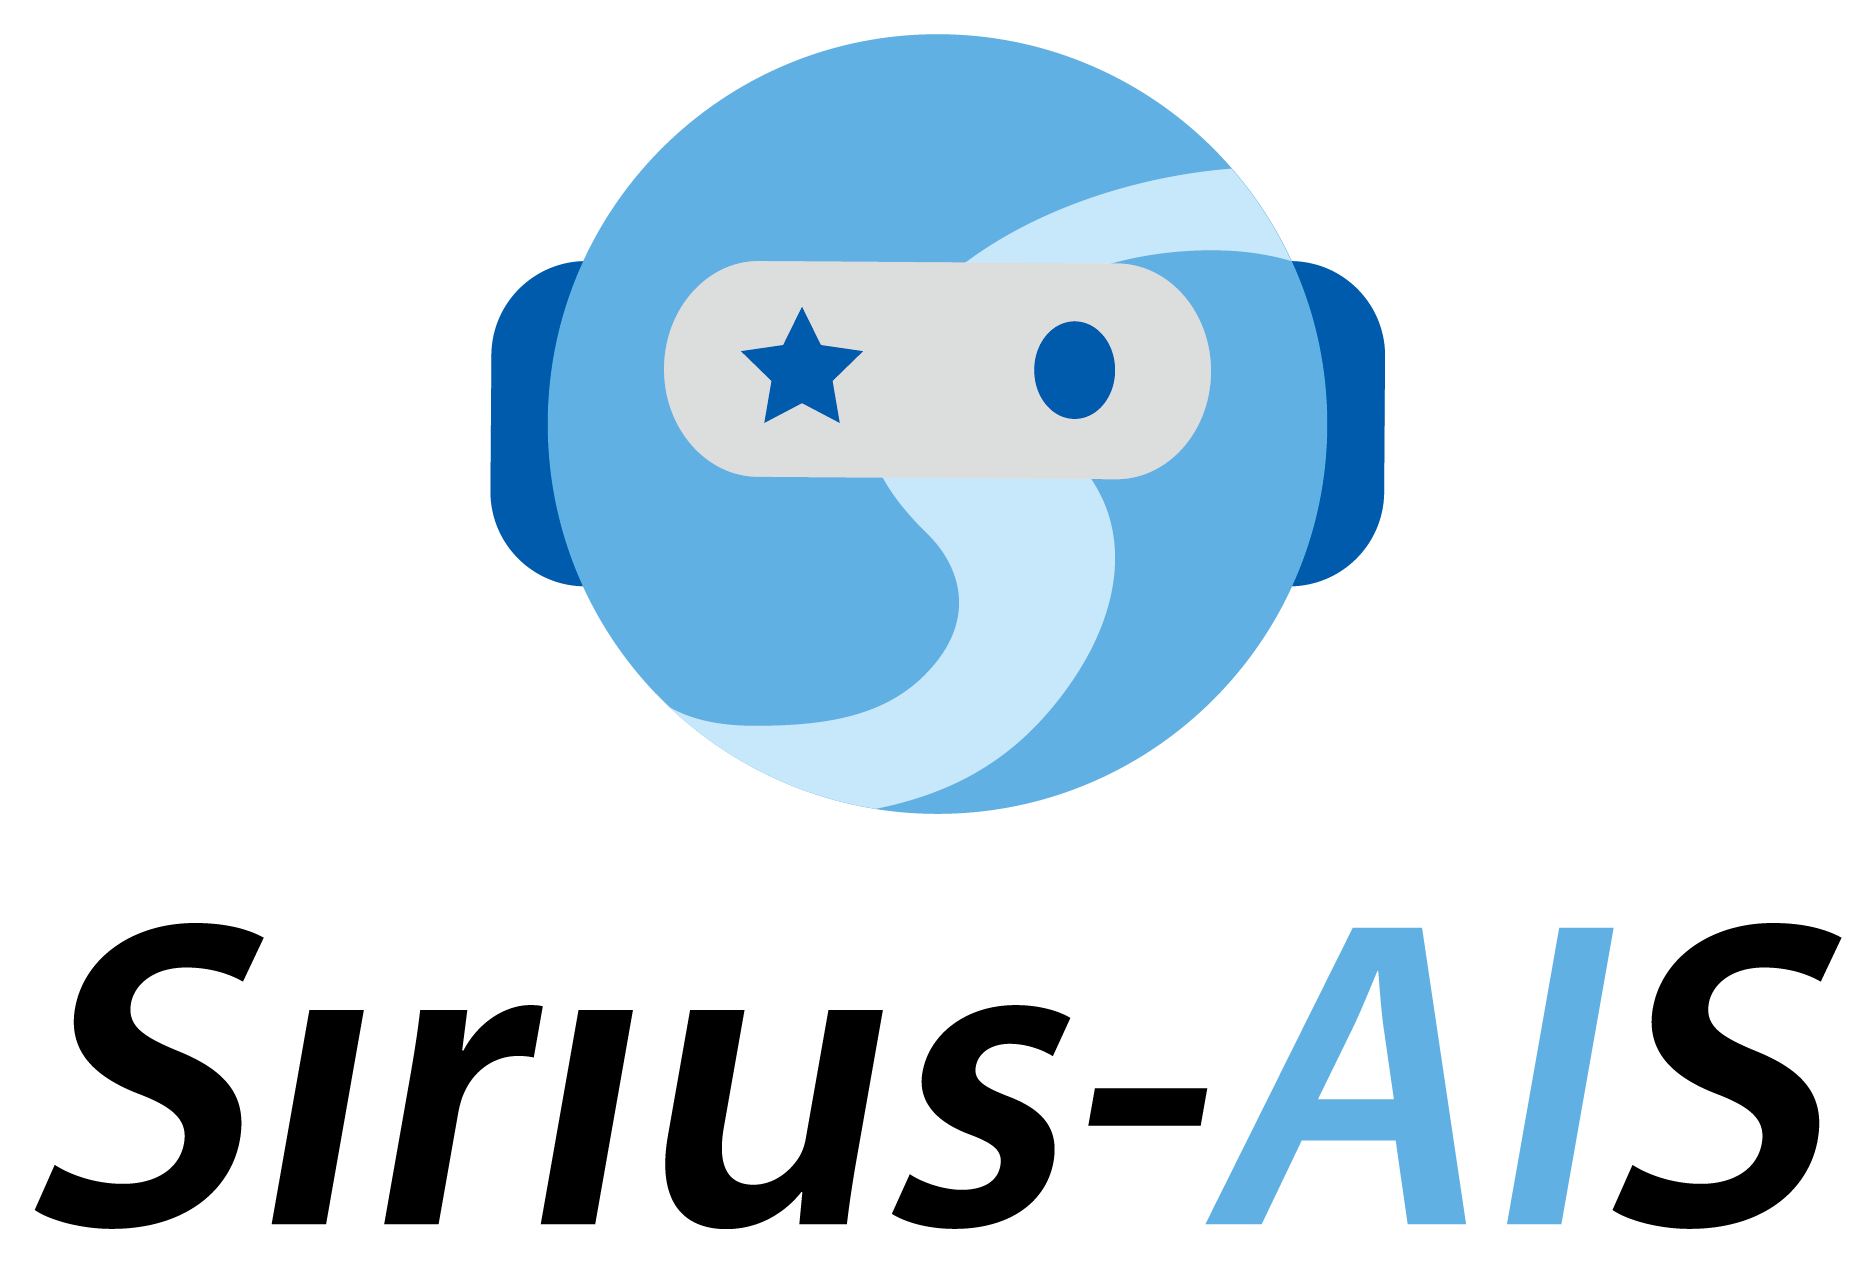 Sirius-AIS